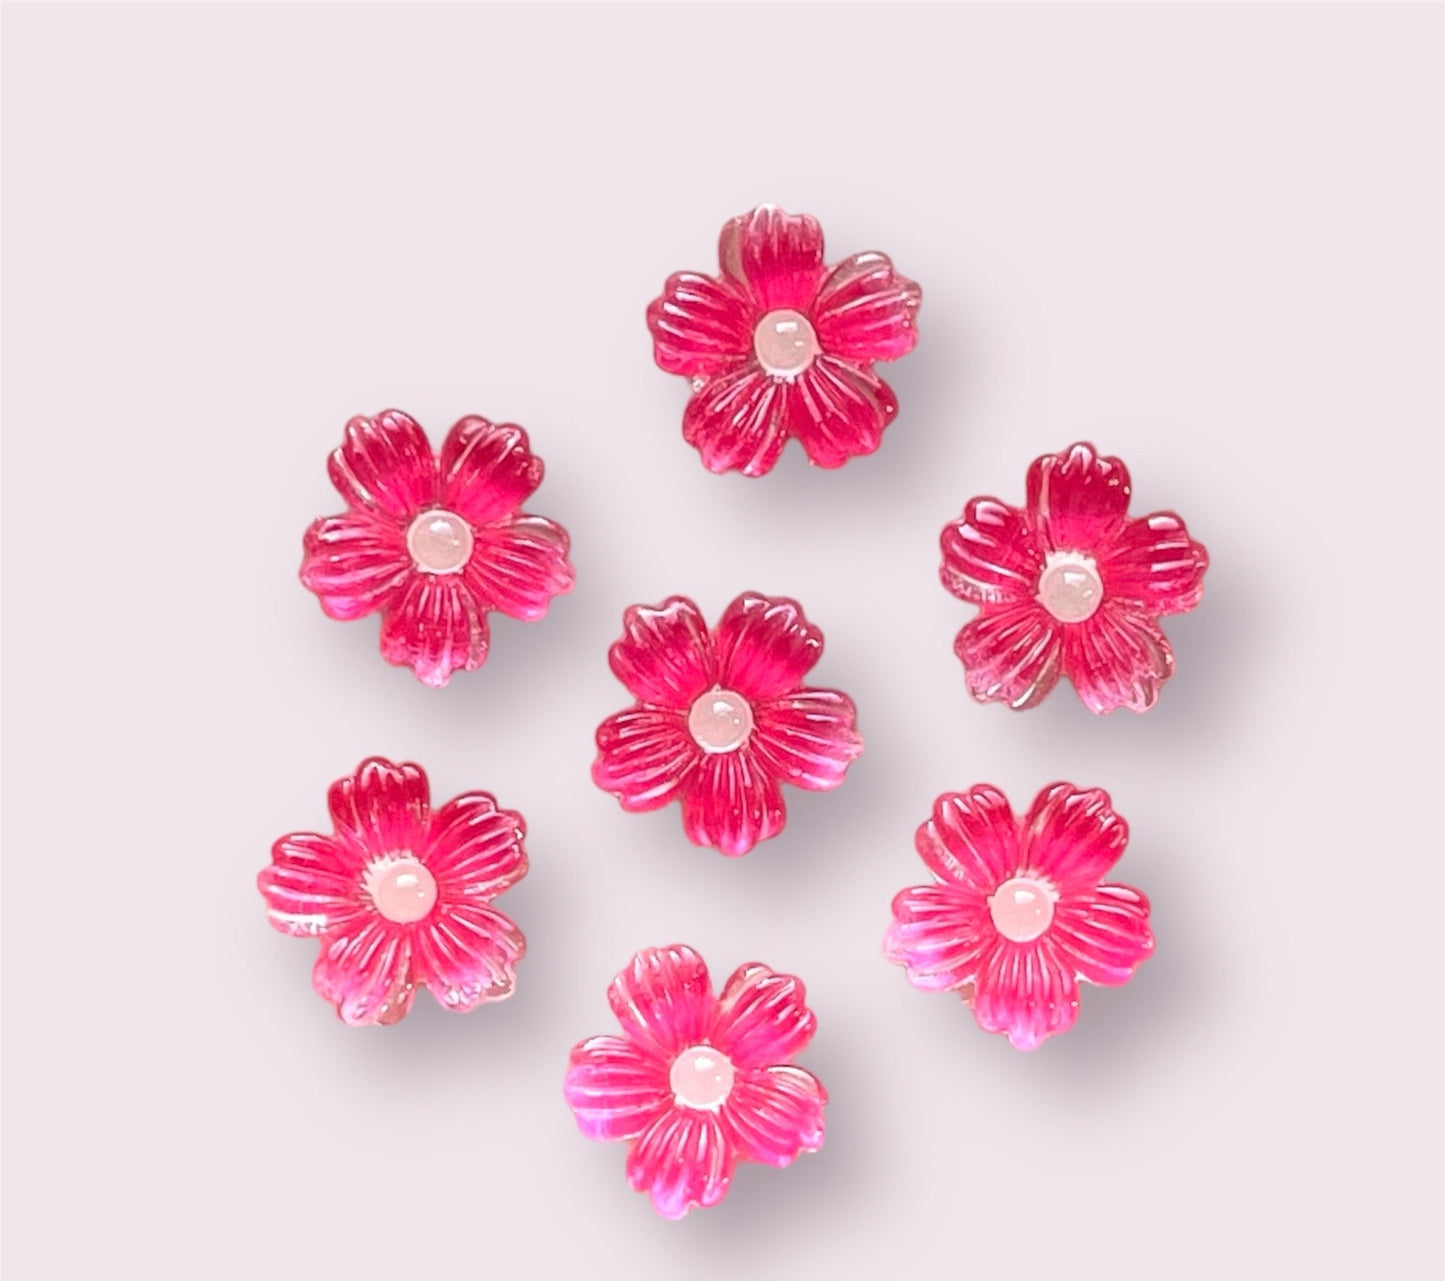 Deep pink glass effect flower cabochons, 9mm